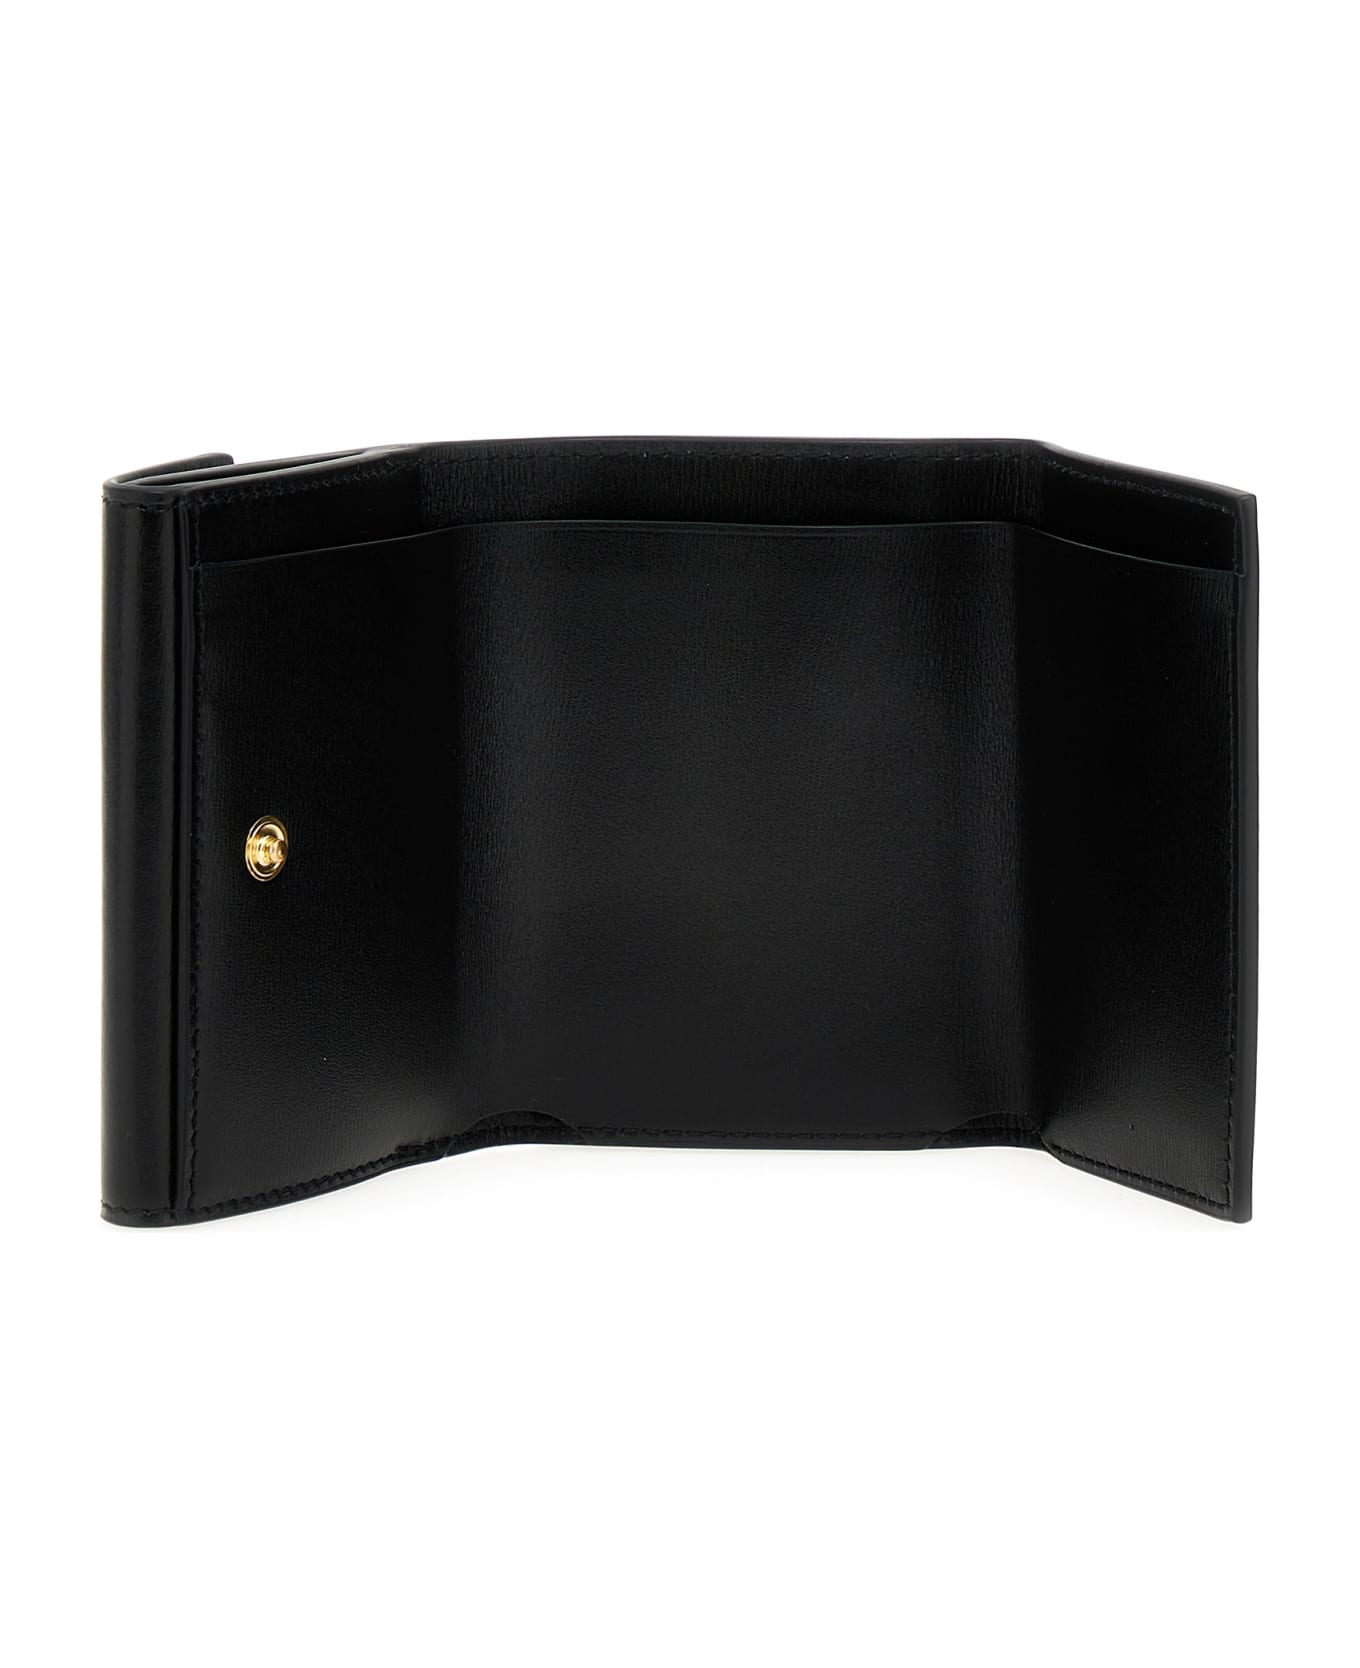 Jil Sander Black Calf Leather Wallet - 001